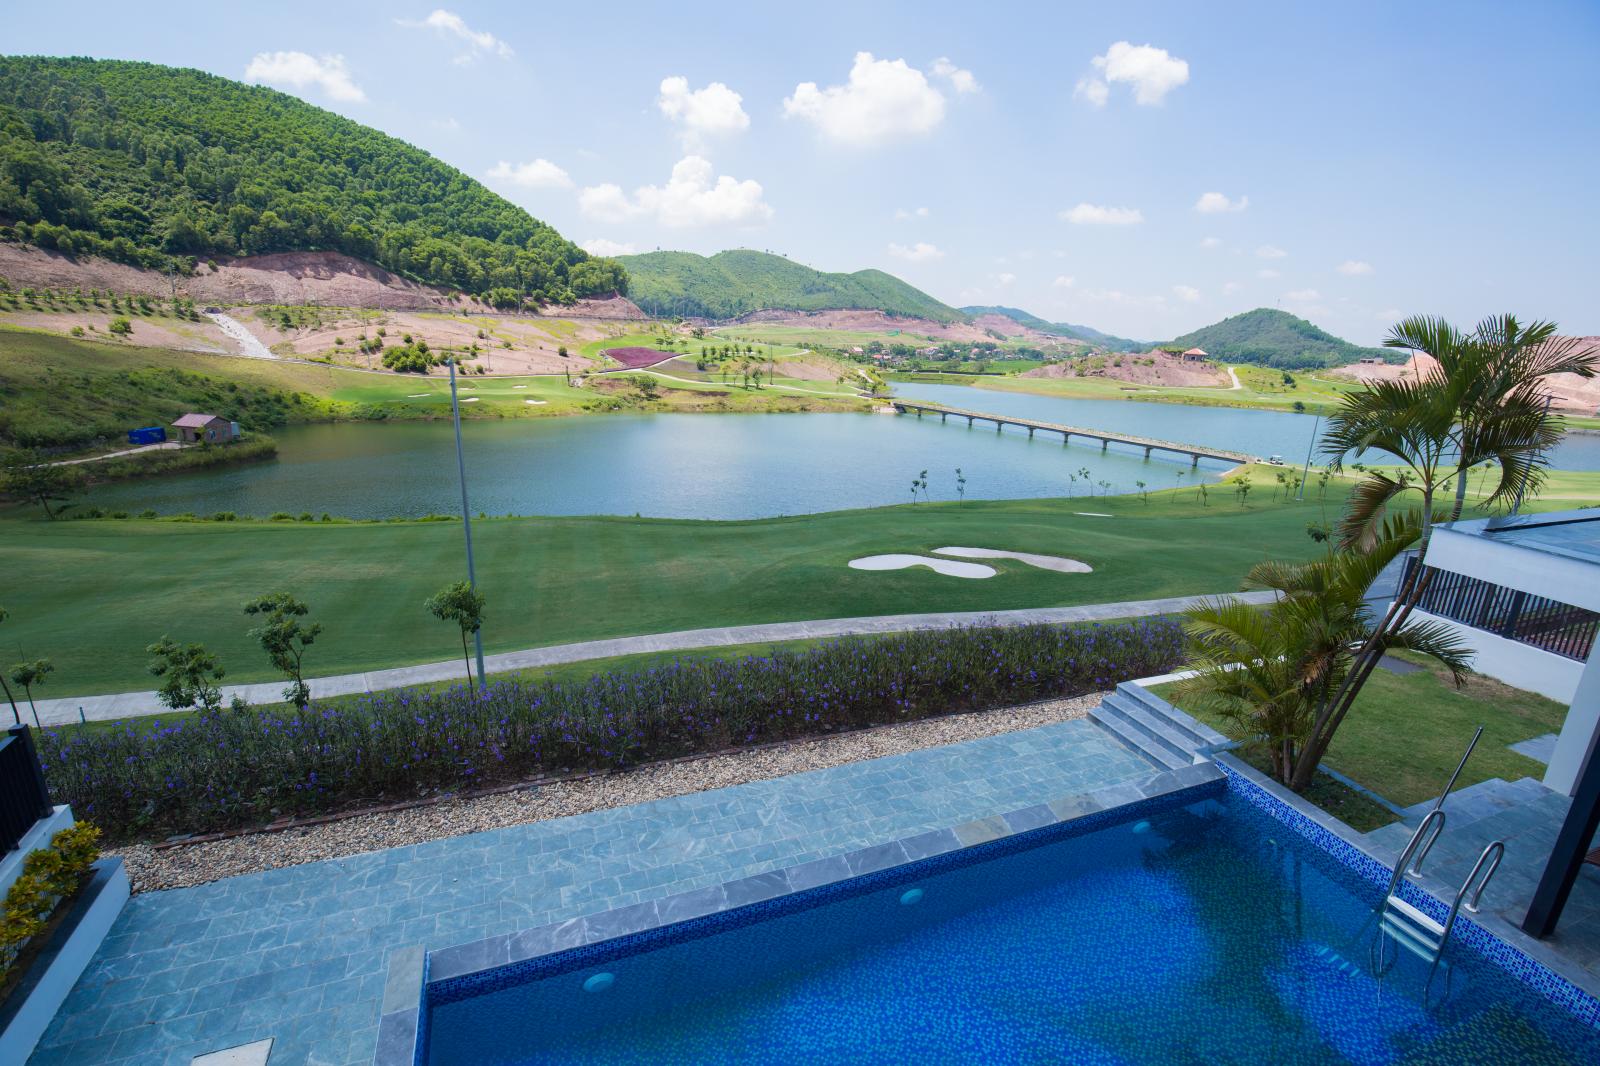 hình ảnh sân golf nhìn từ bể bơi khu biệt thự, phía trước có dòng sông và đồi núi